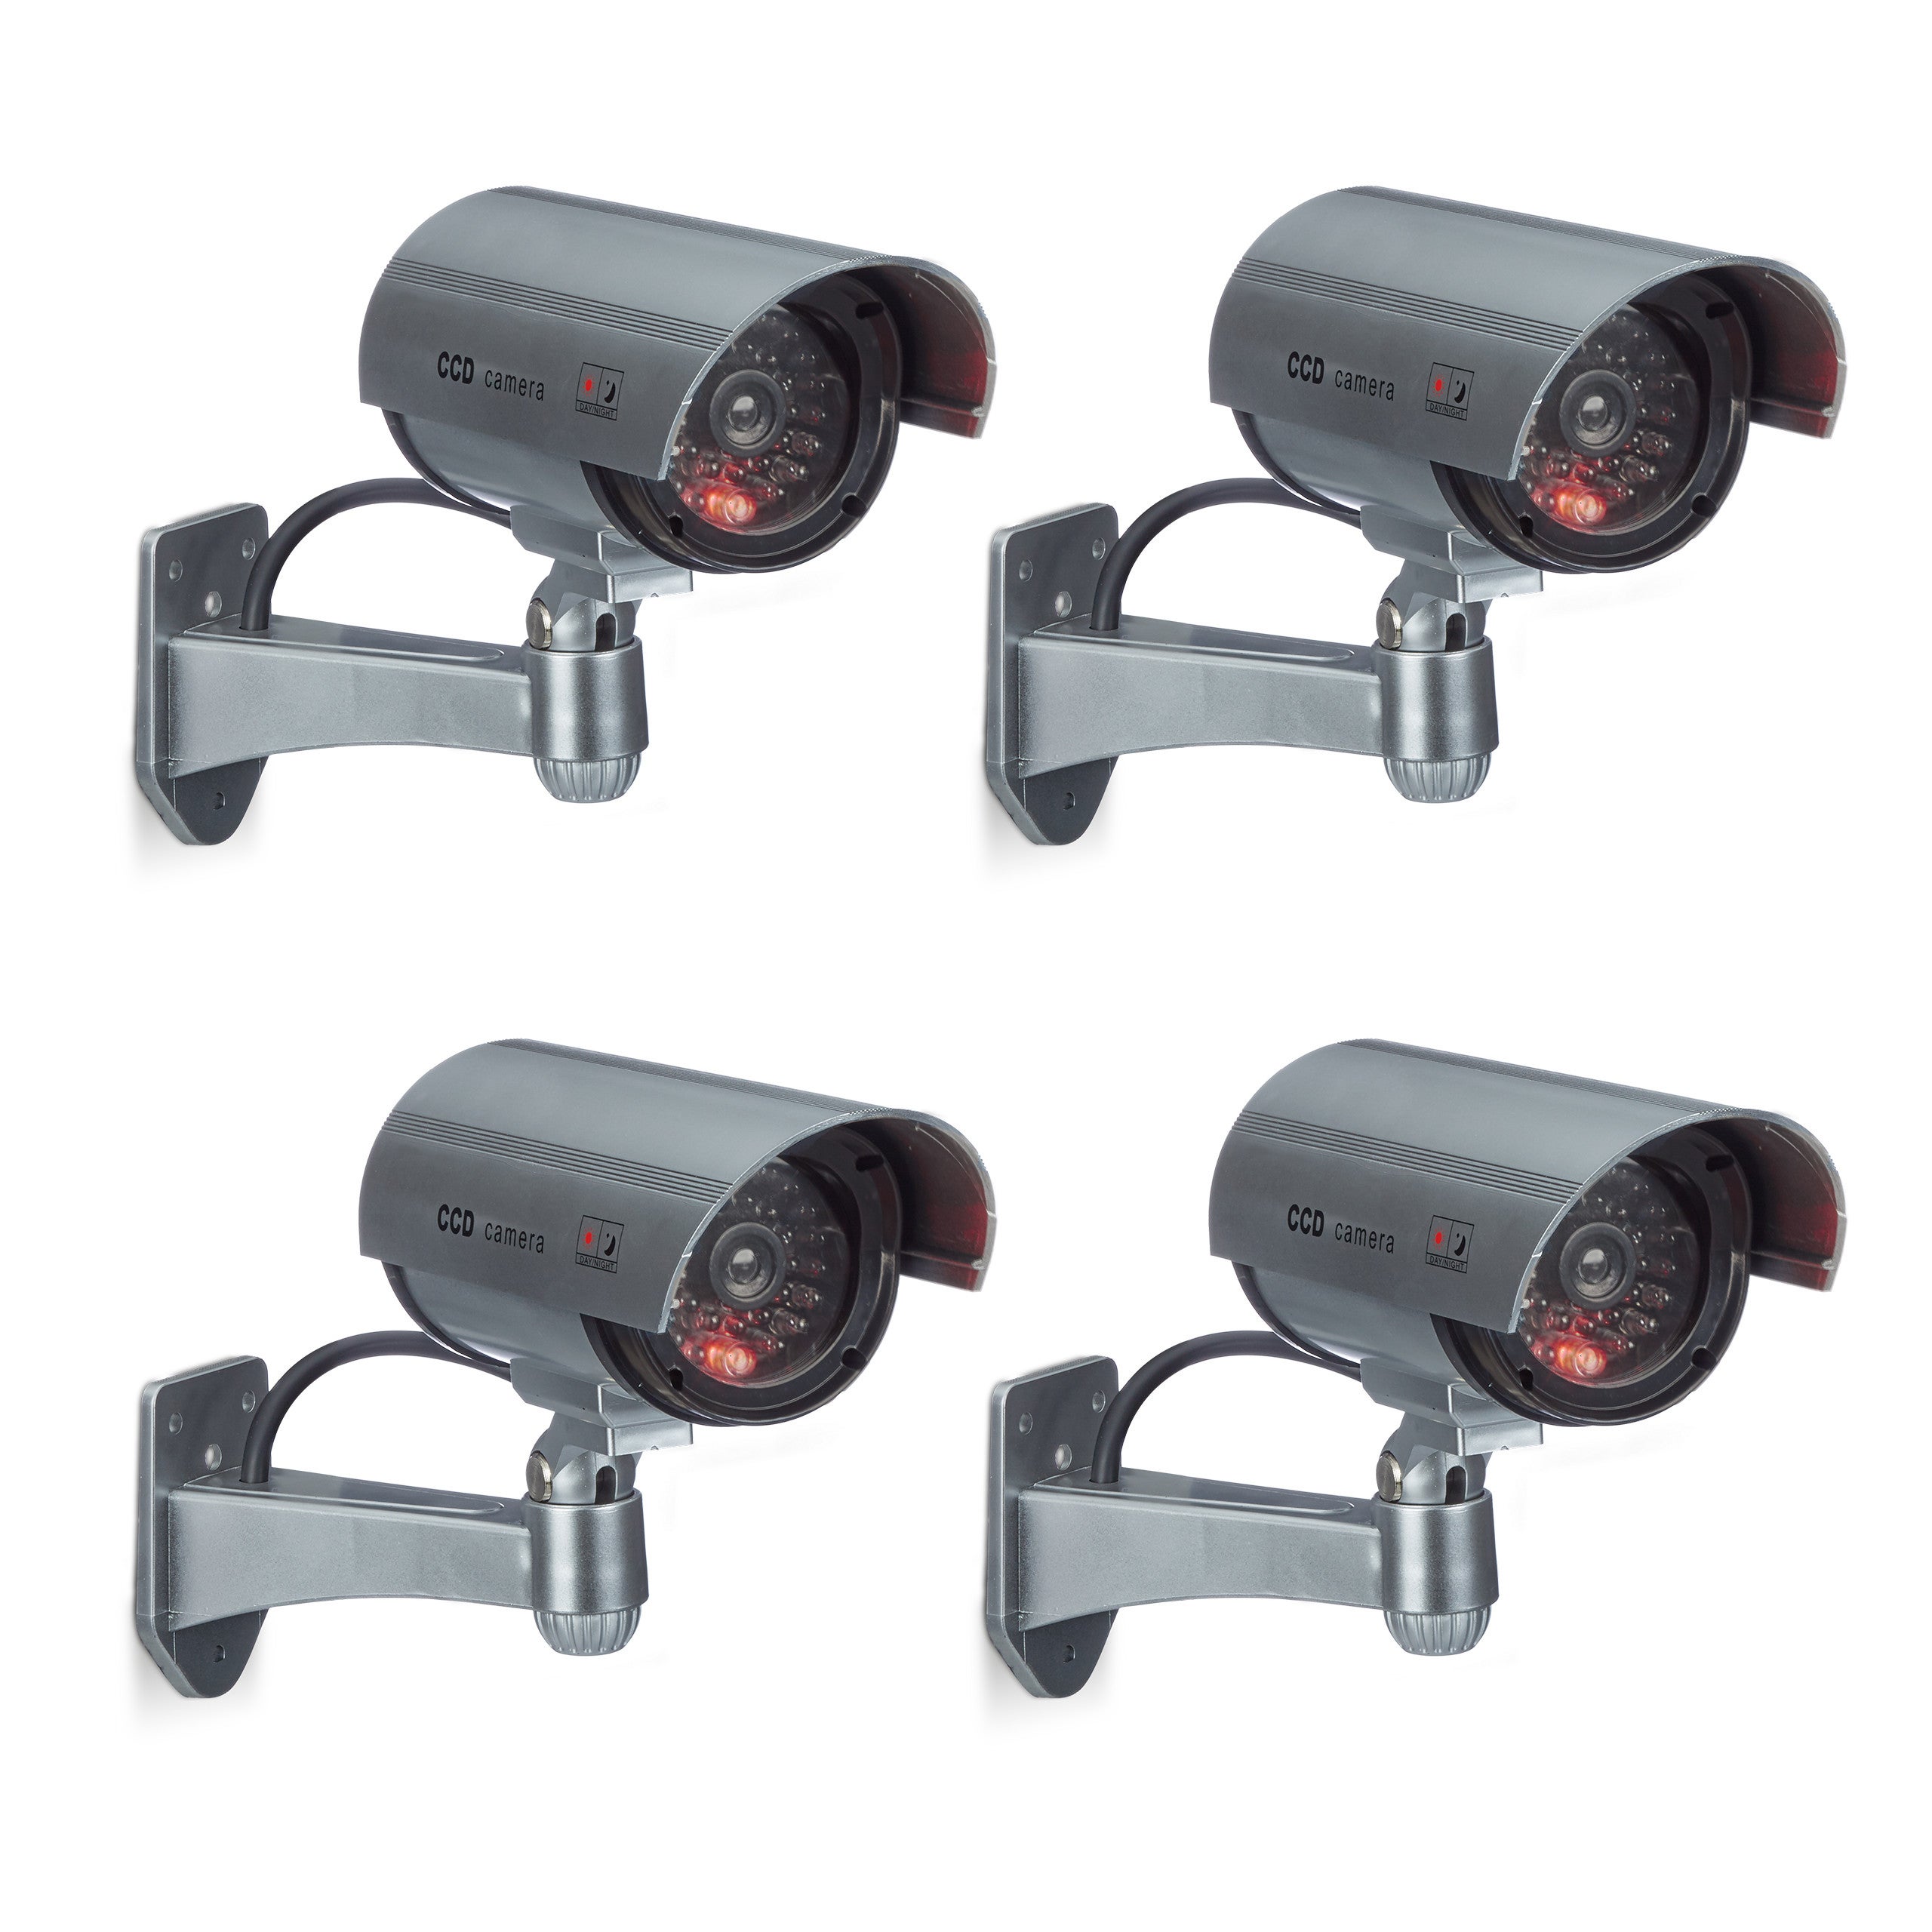 Relaxdays Fausse caméra de surveillance intérieur extérieur caméra factice  lampe LED murale sécurité cambrioleur voleur, grise